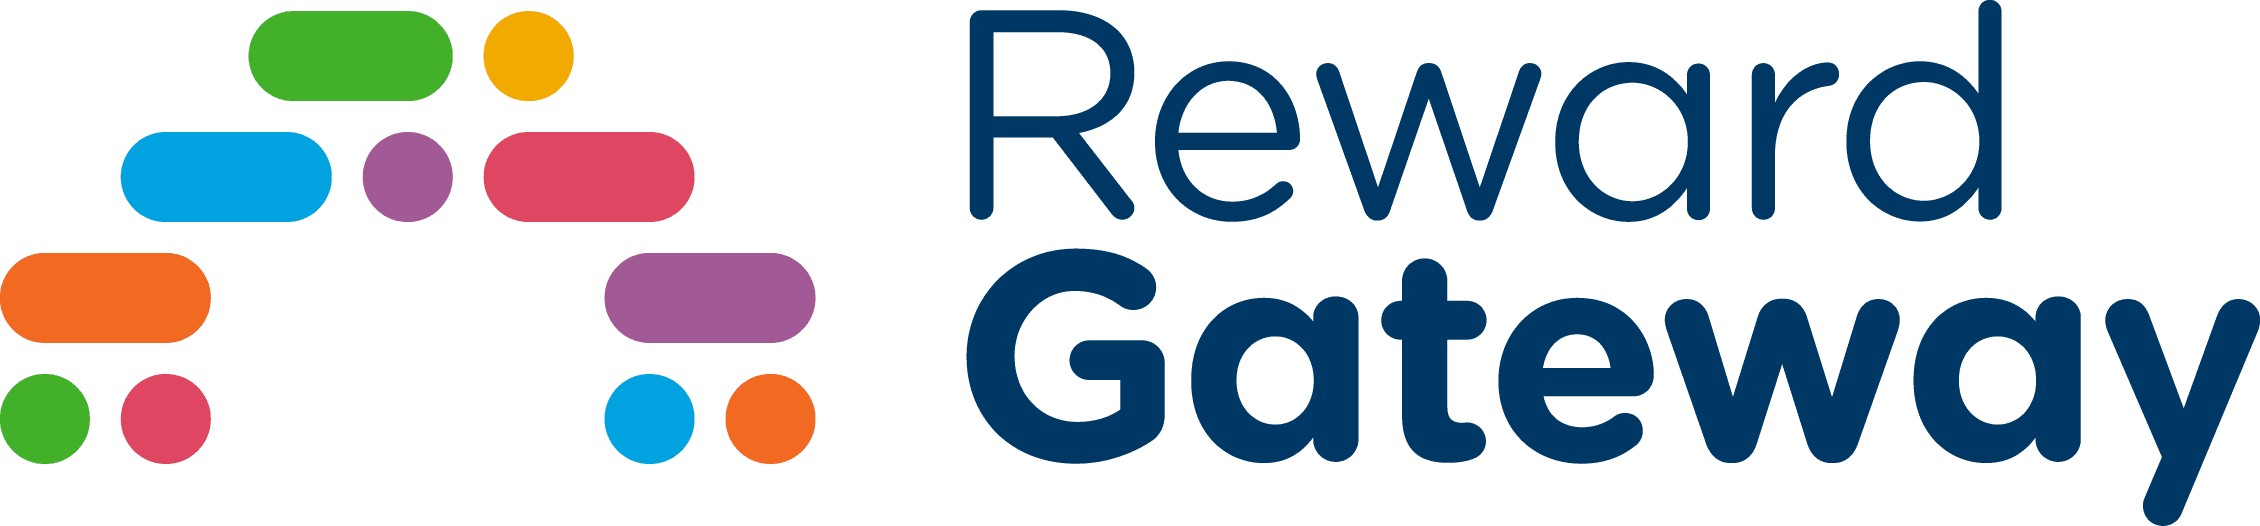 Reward Gateway Logo.png